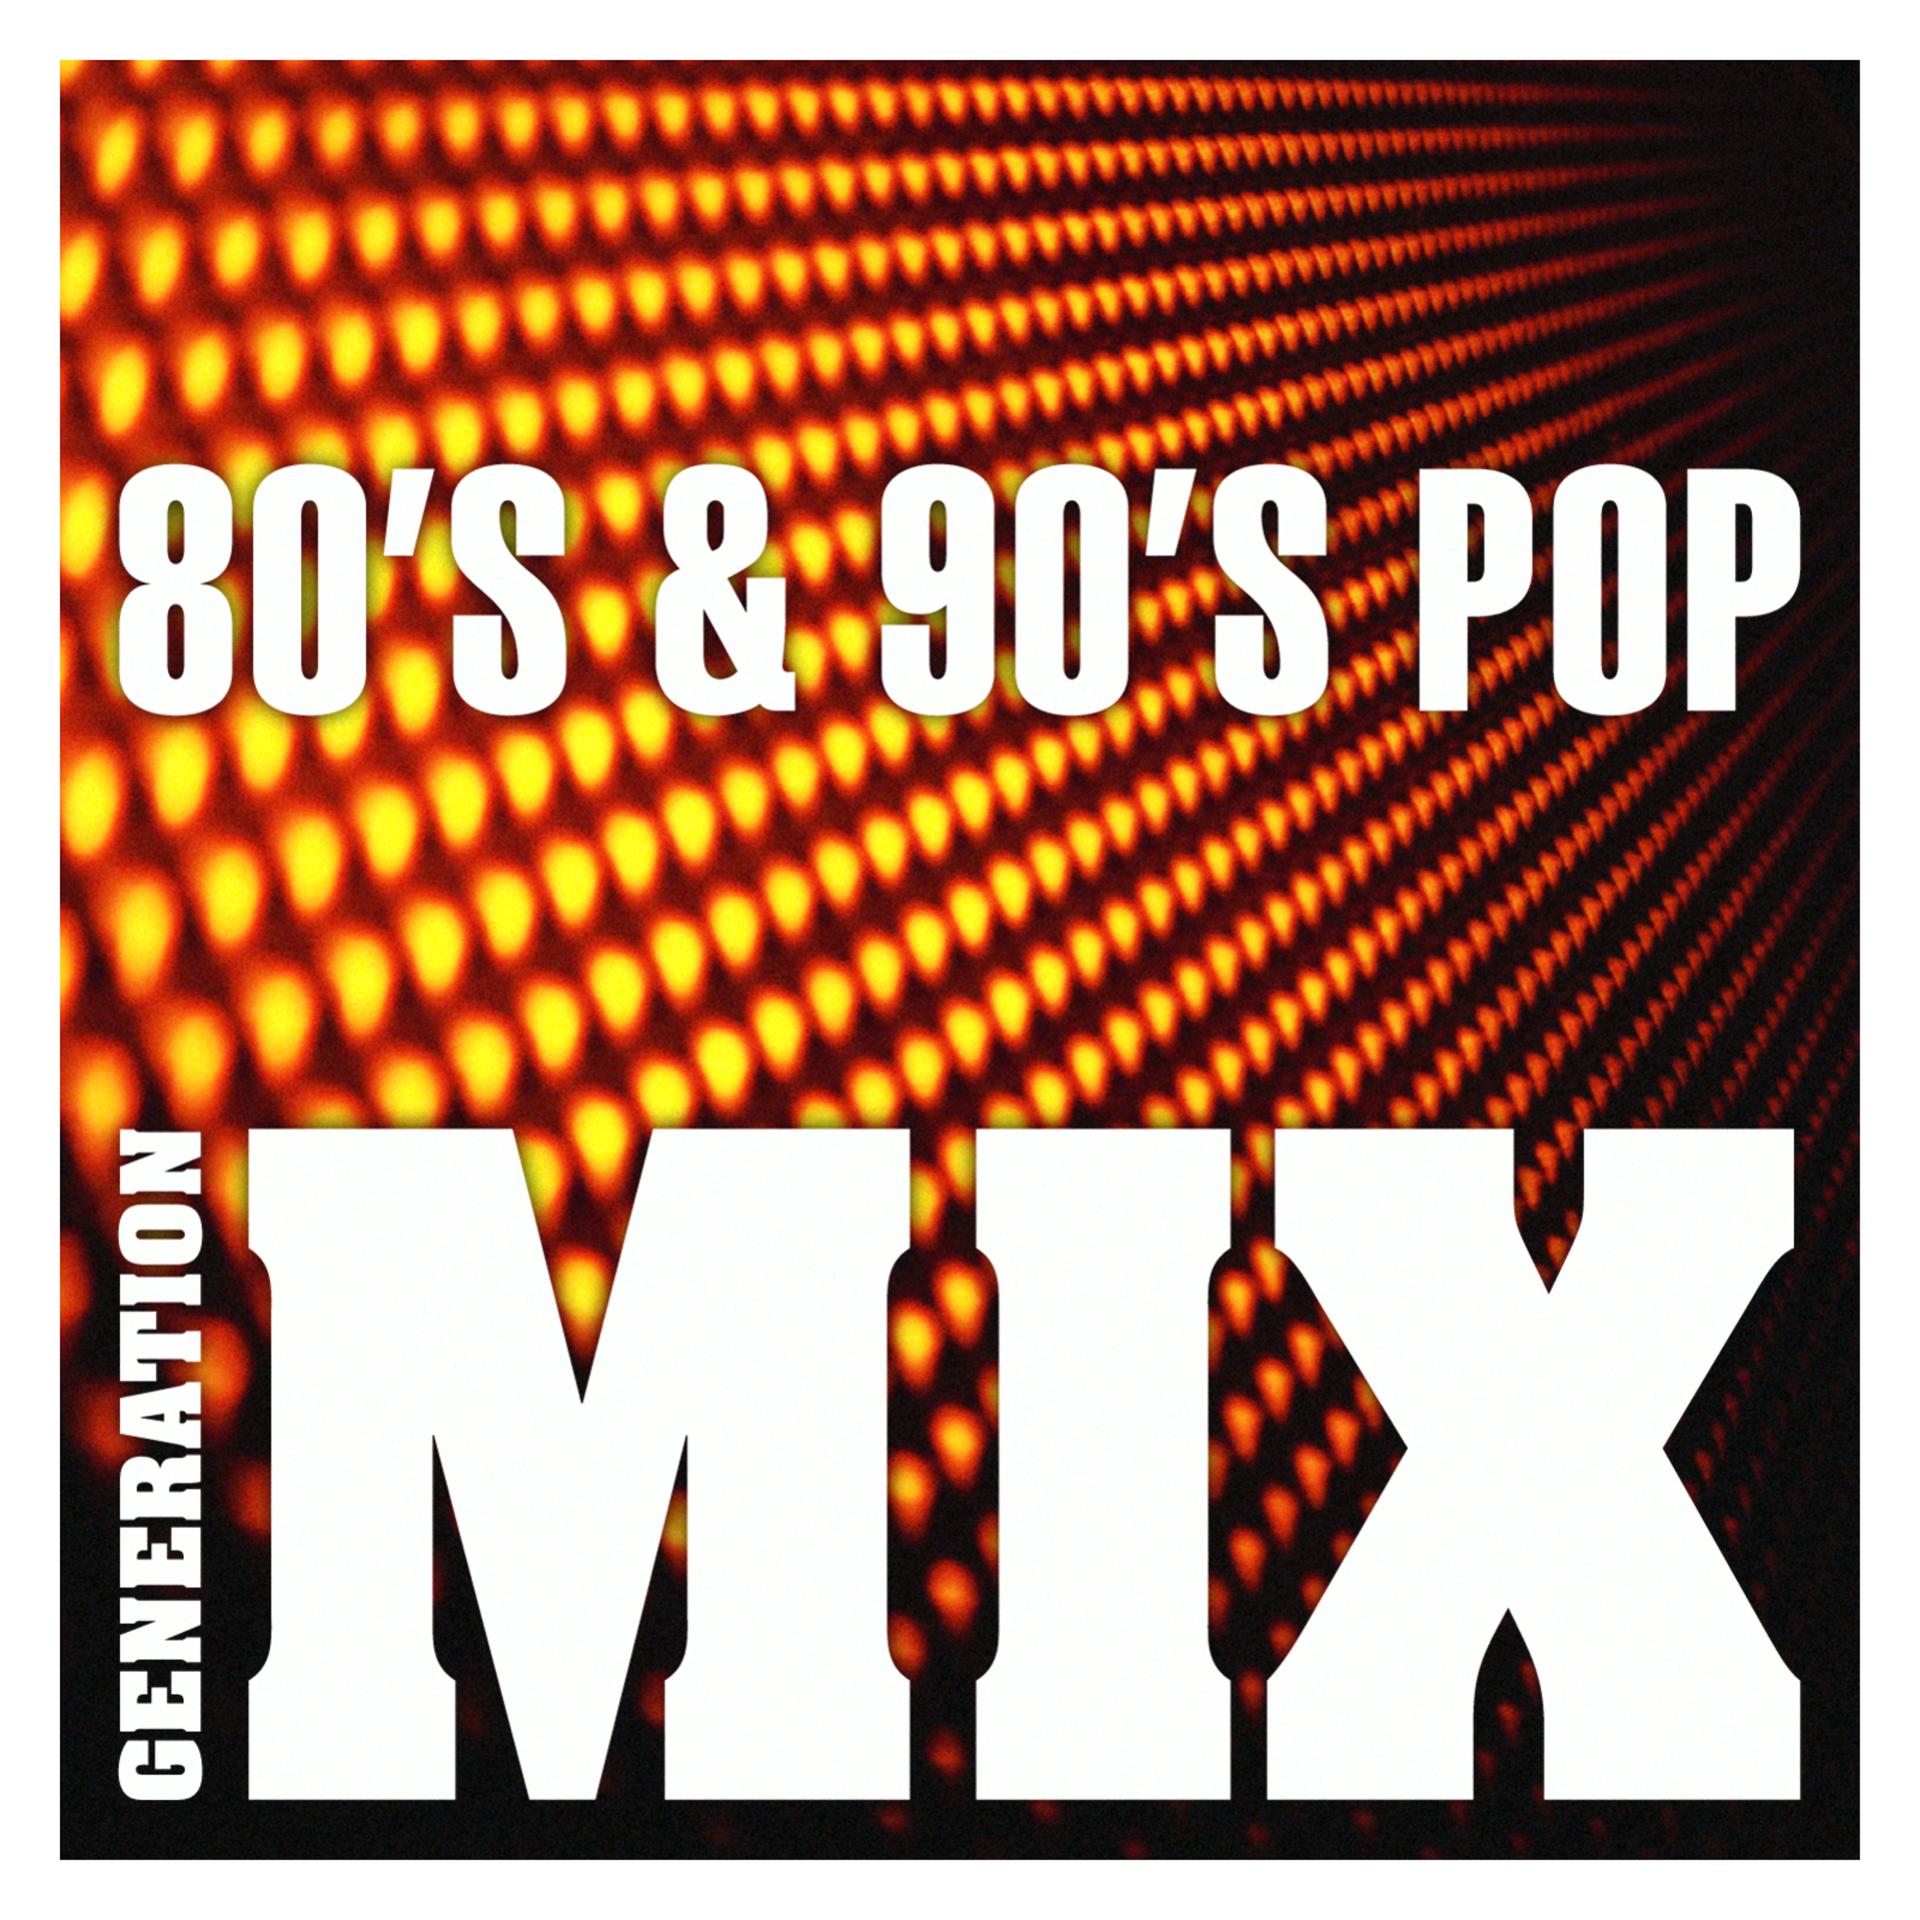 Слушать музыку современную ремиксы. Ремиксы 80-90. Ремиксы 80-90 в современной обработке. Mix 80s. 7 Seconds 90s Pop.